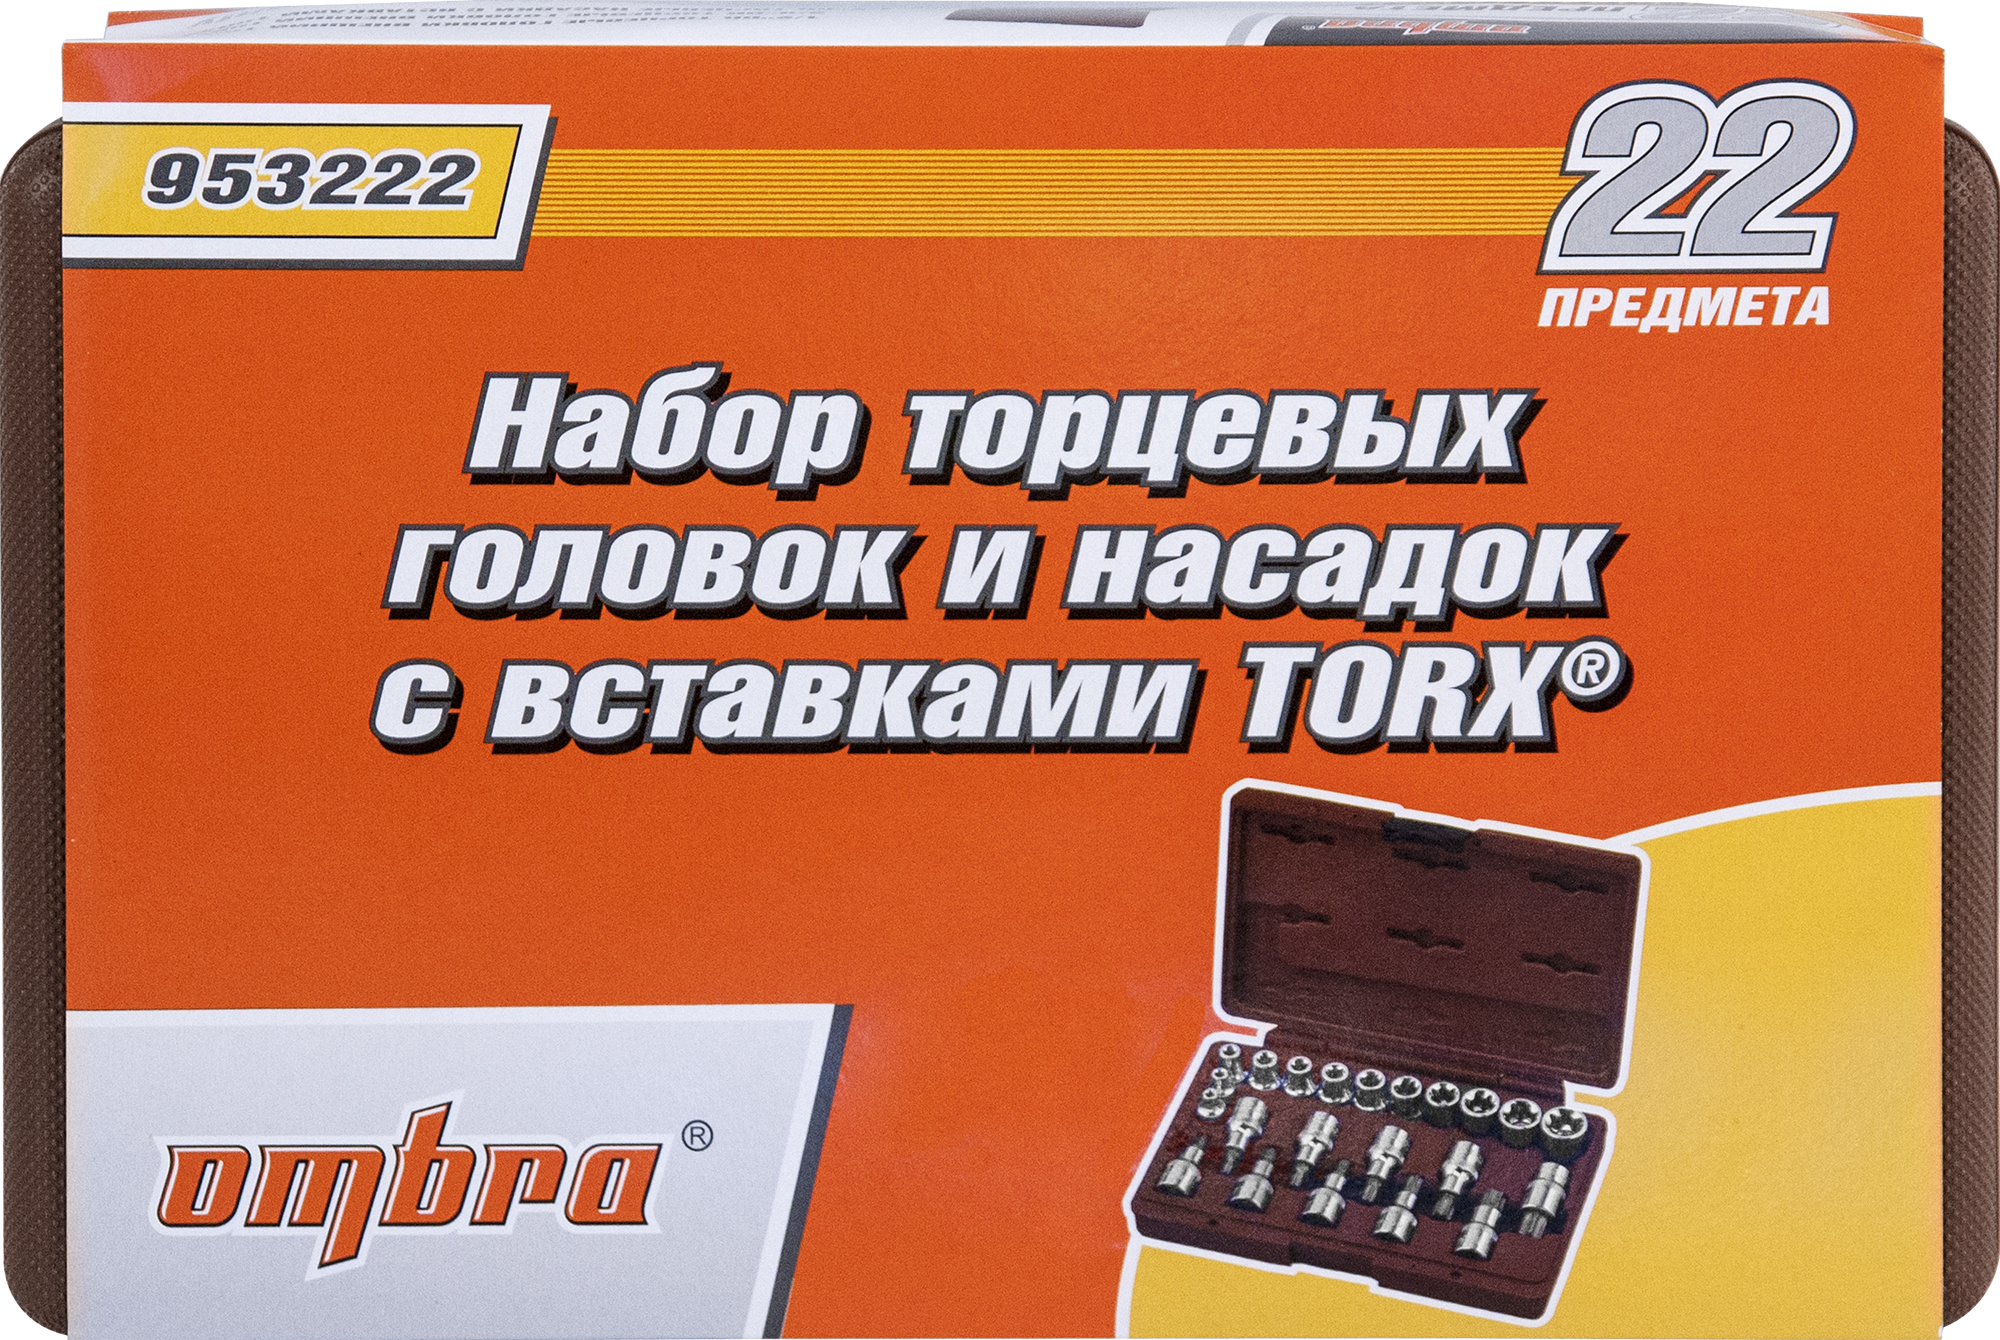 Набор головок торцевых, внешний TORX®, и насадок с вставками-битами TORX®, 22 предмета OMBRA 953222